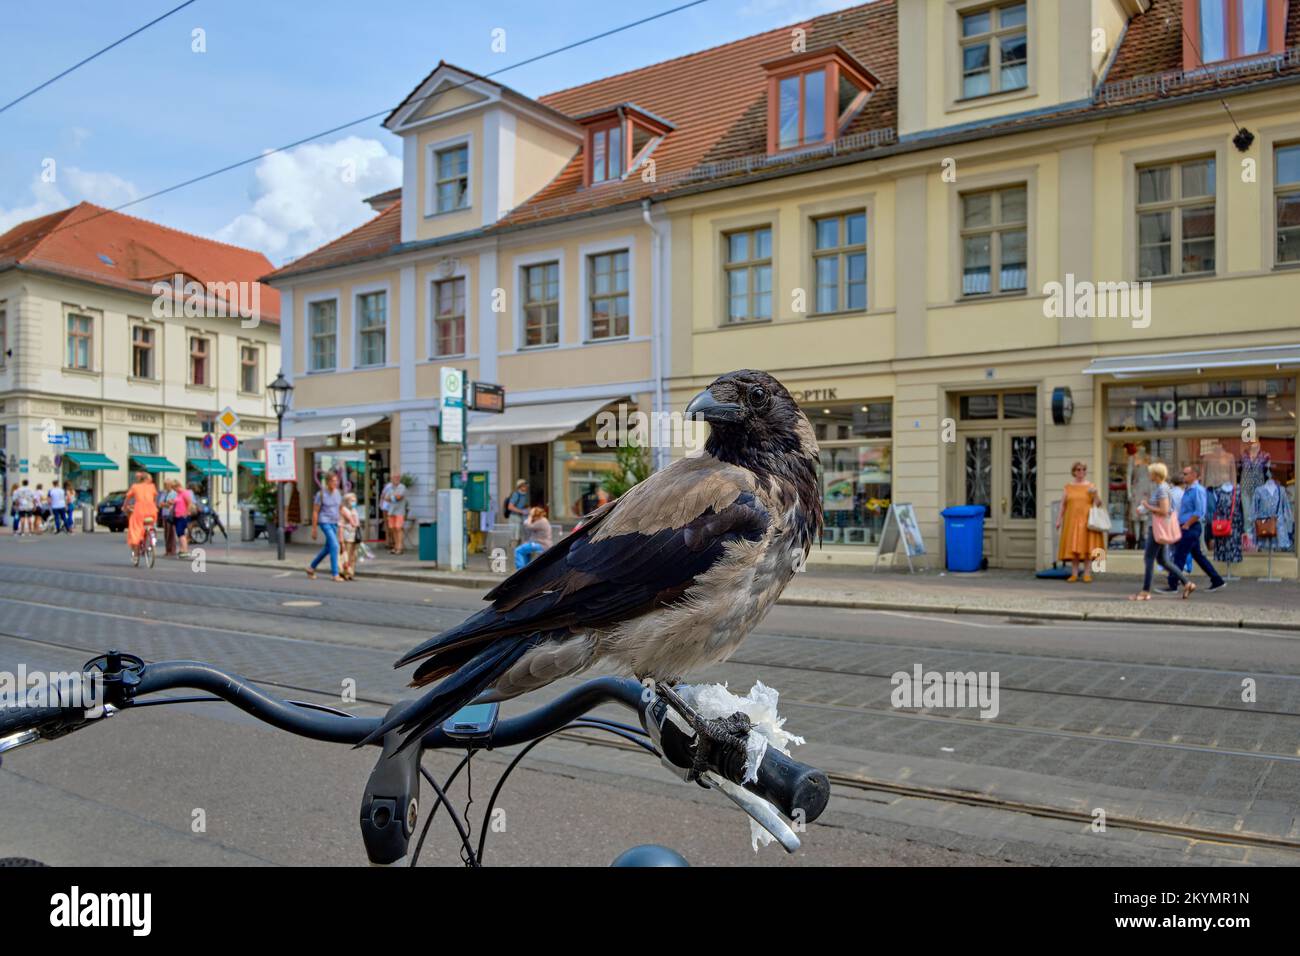 Eine Kapuzenkrähe (Corvus corone cornix) hat sich auf einem geparkten Fahrrad in einer städtischen Umgebung niedergelassen und sieht gleichzeitig verdächtig und merkwürdig. Stockfoto